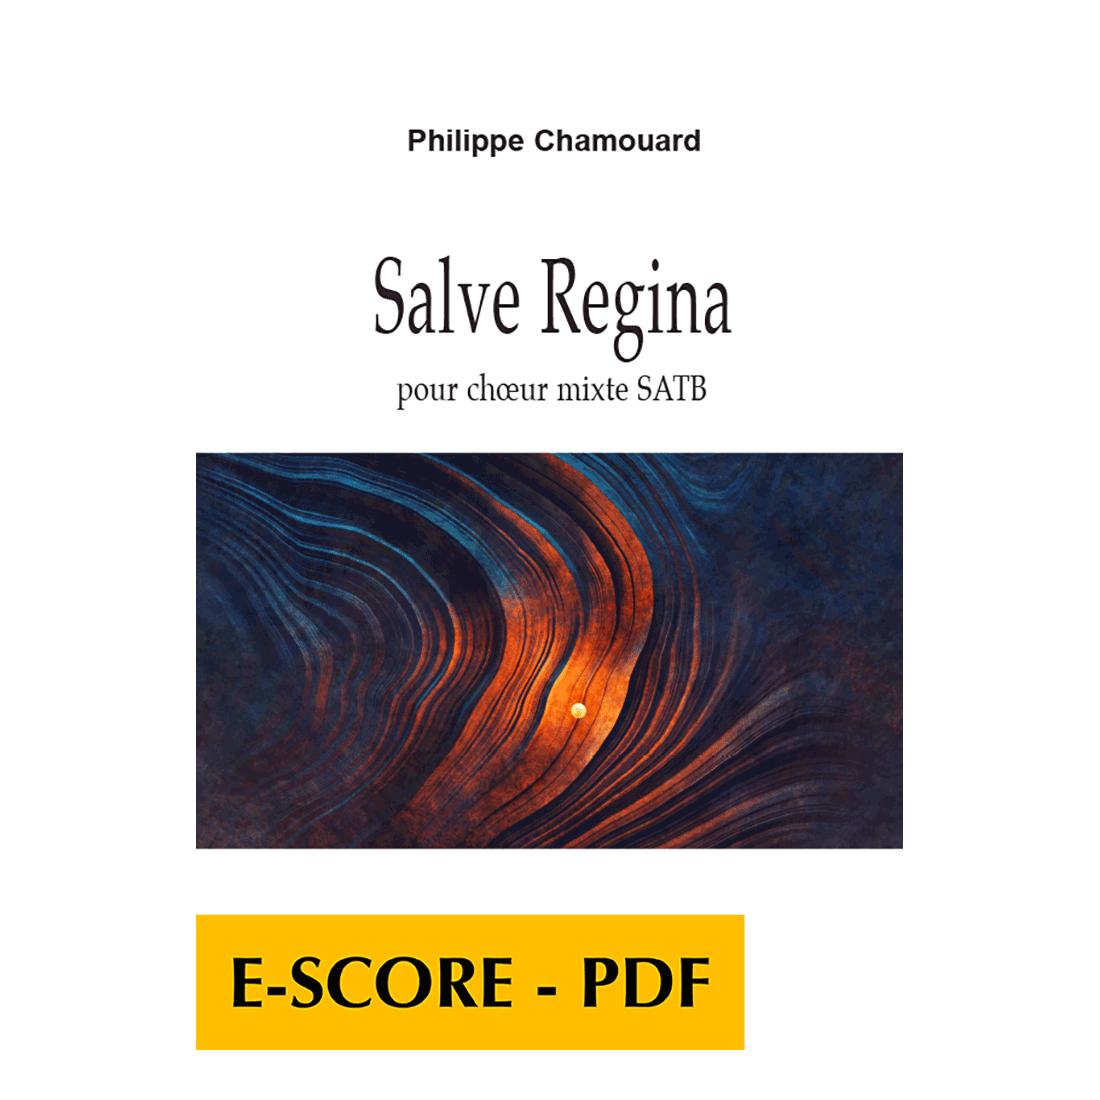 Salve Regina pour choeur mixte SATB - E-score PDF